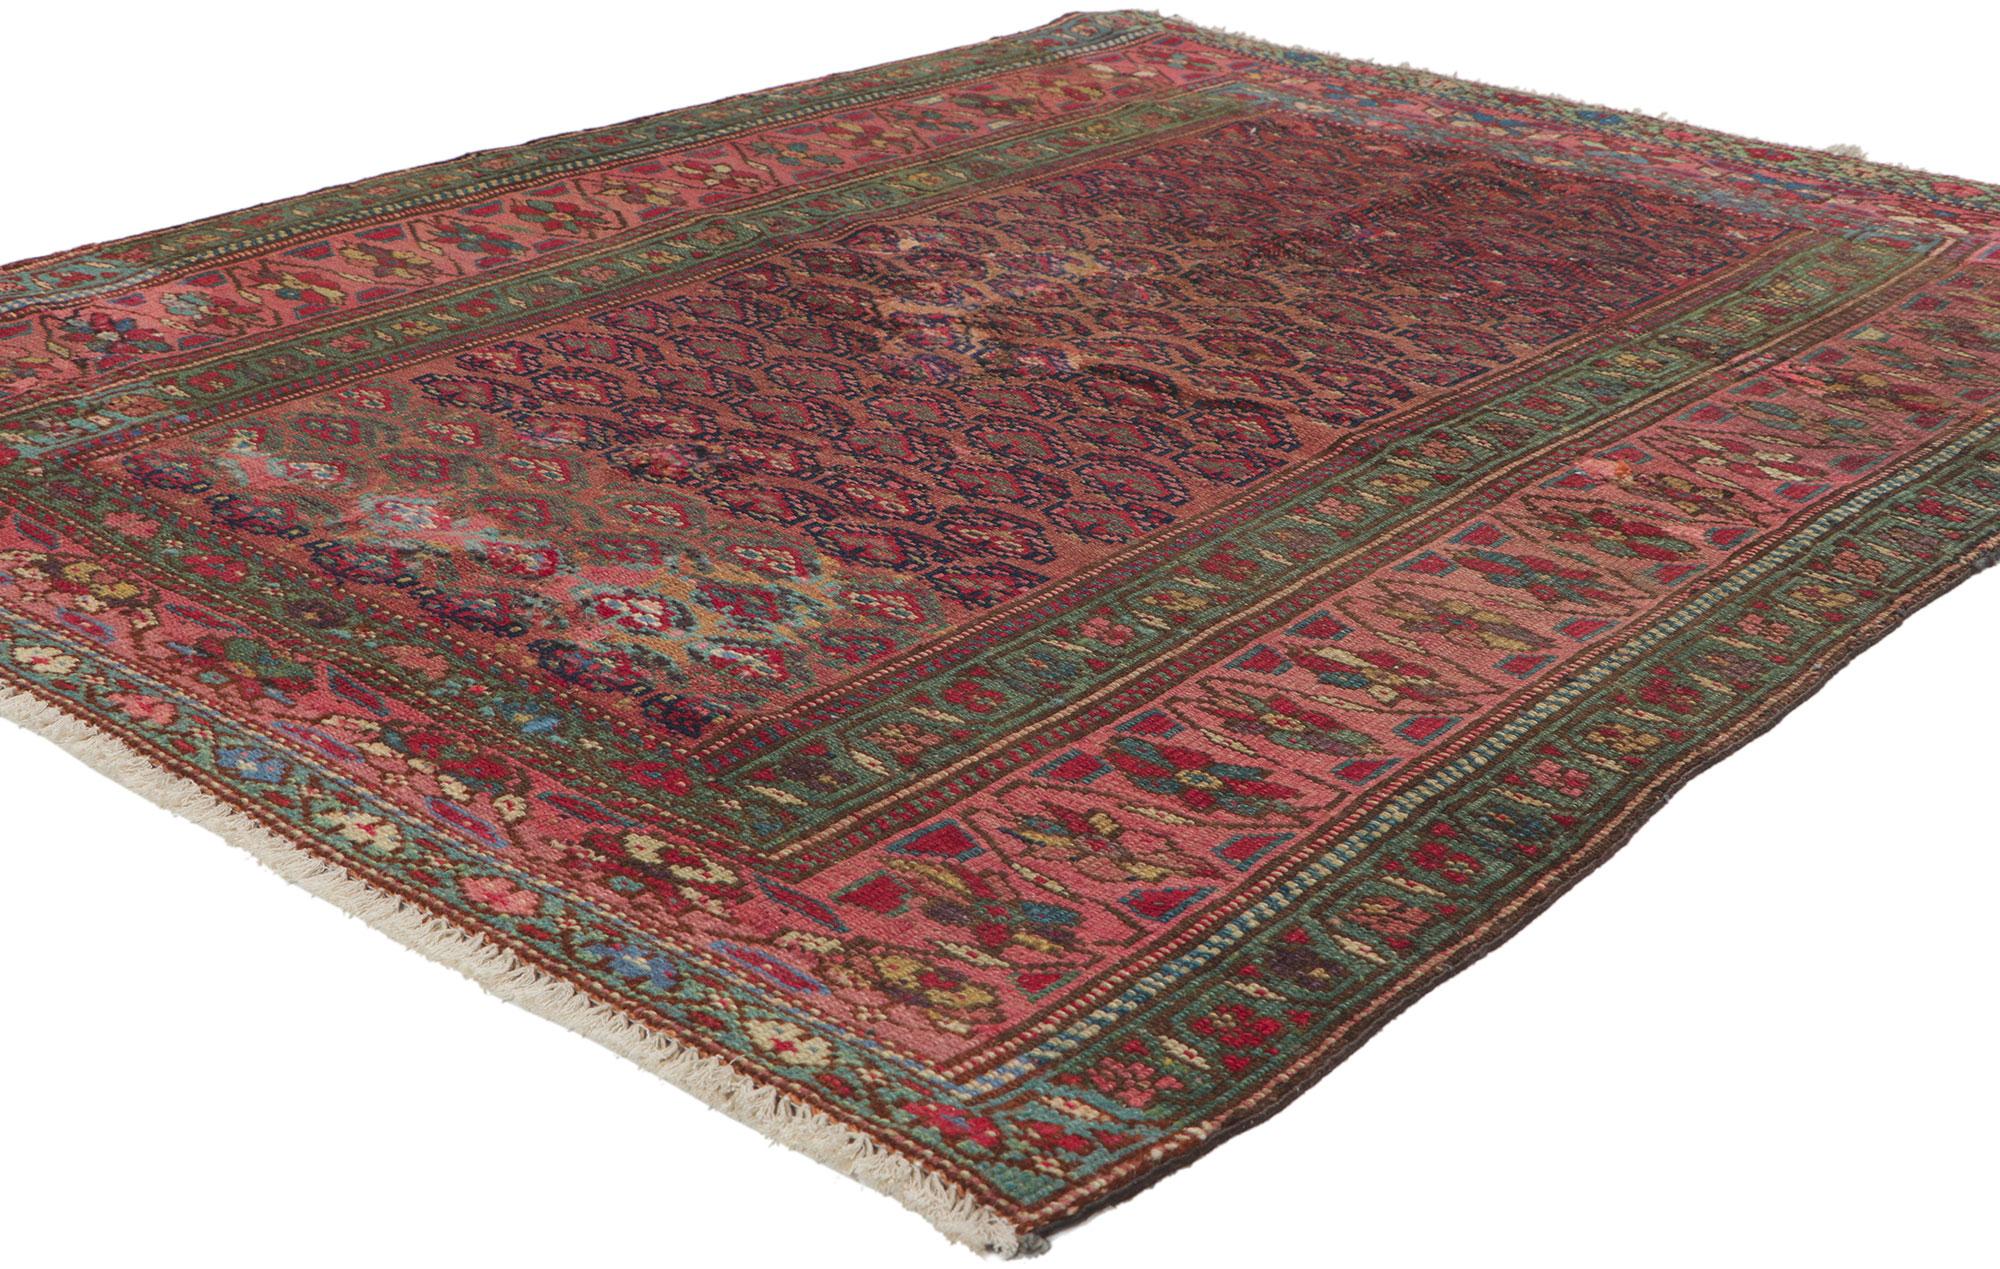 61123 Antiker persischer Hamadan-Teppich, 03'11 x 04'11.
Mit seinem zeitlosen Stil, seinen unglaublichen Details und seiner Textur ist dieser handgeknüpfte antike persische Hamadan-Teppich aus Wolle eine fesselnde Vision gewebter Schönheit. Das sich